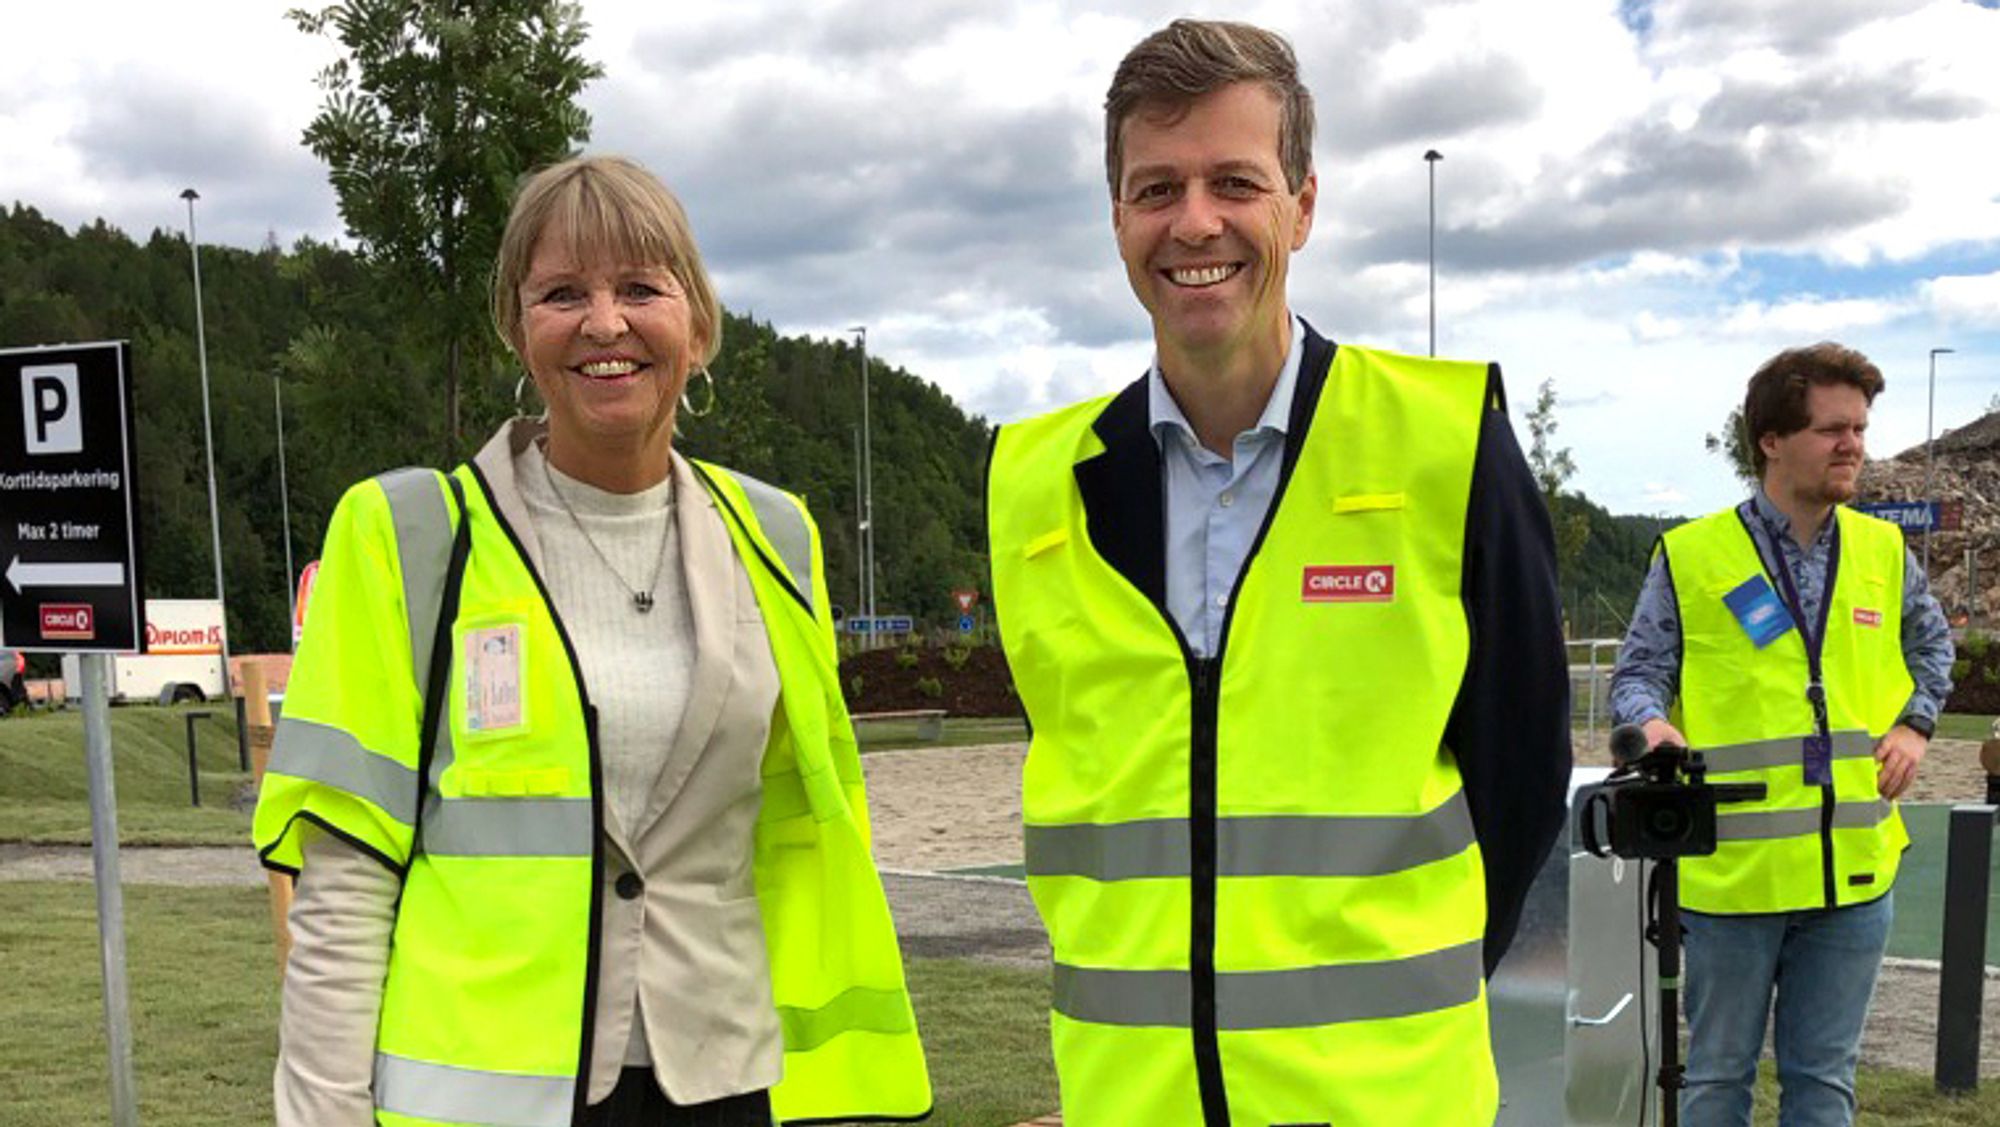 Administerende direktør i Nye Veier, Anette Aanesland sammen med samferdselsminister Knut Arild Hareide.